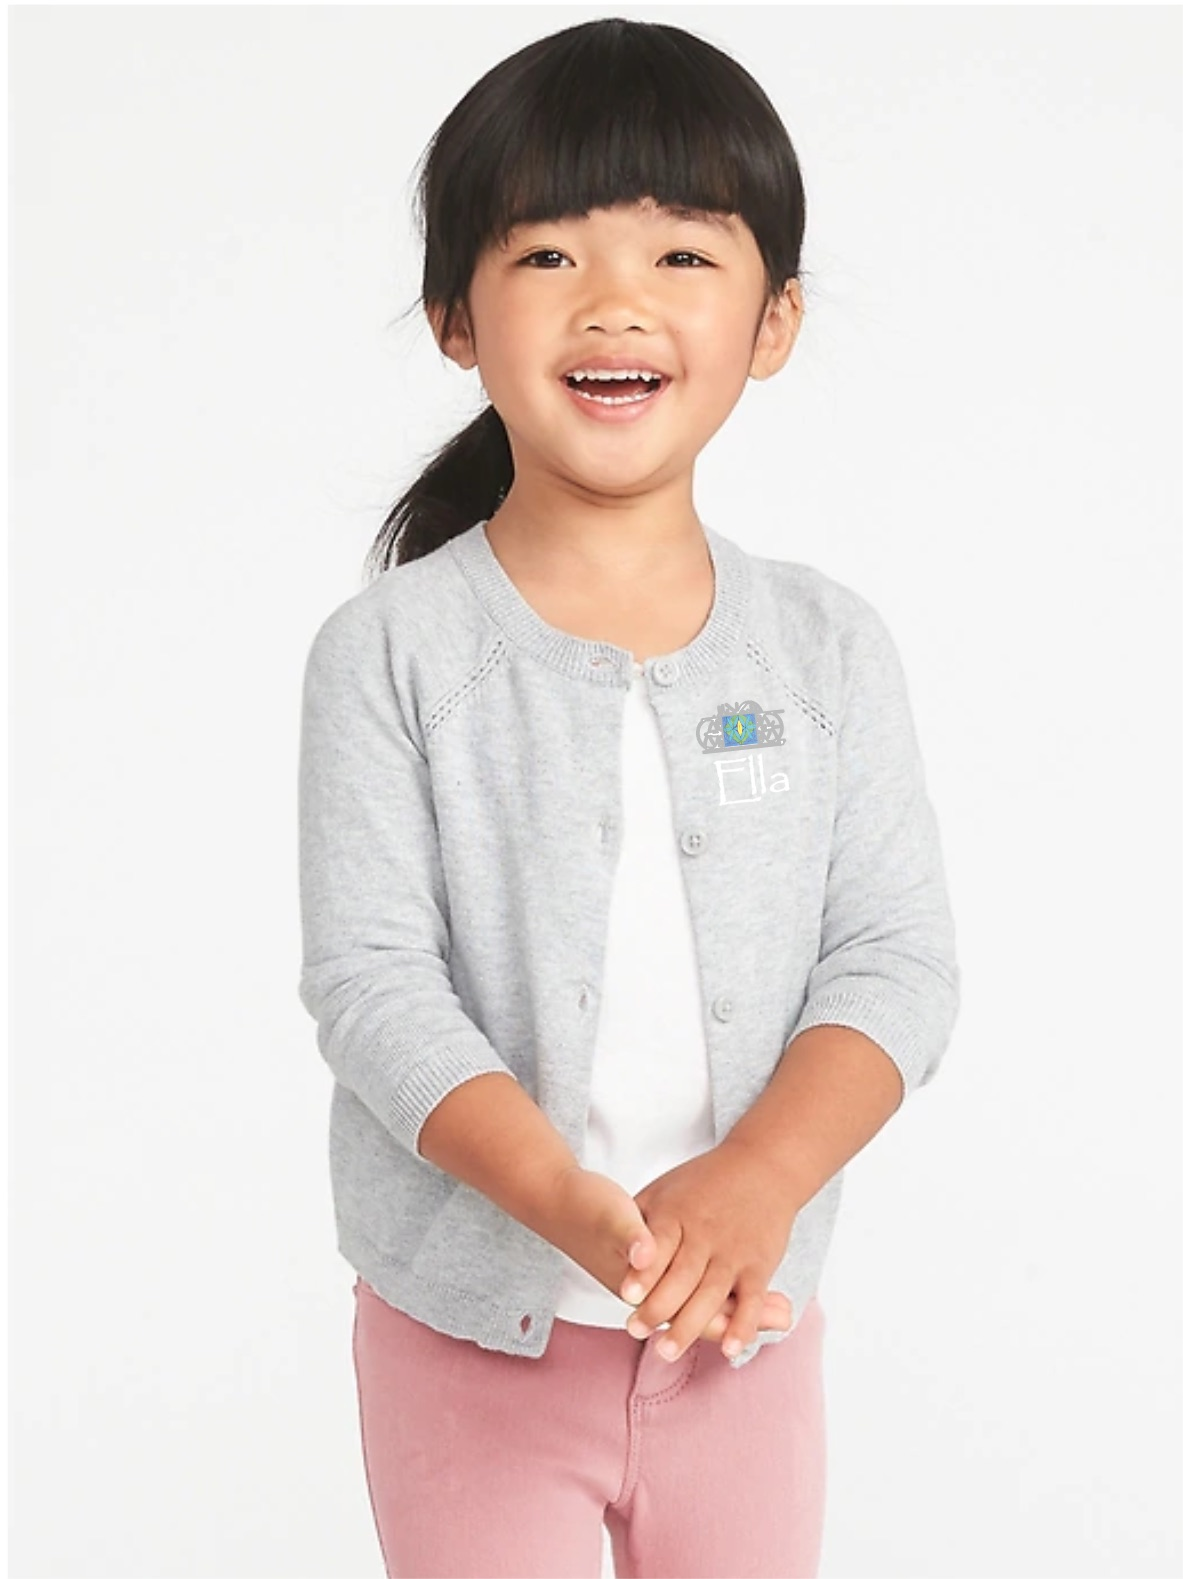 Seeds Preschool Uniform-Girls button up Sweater